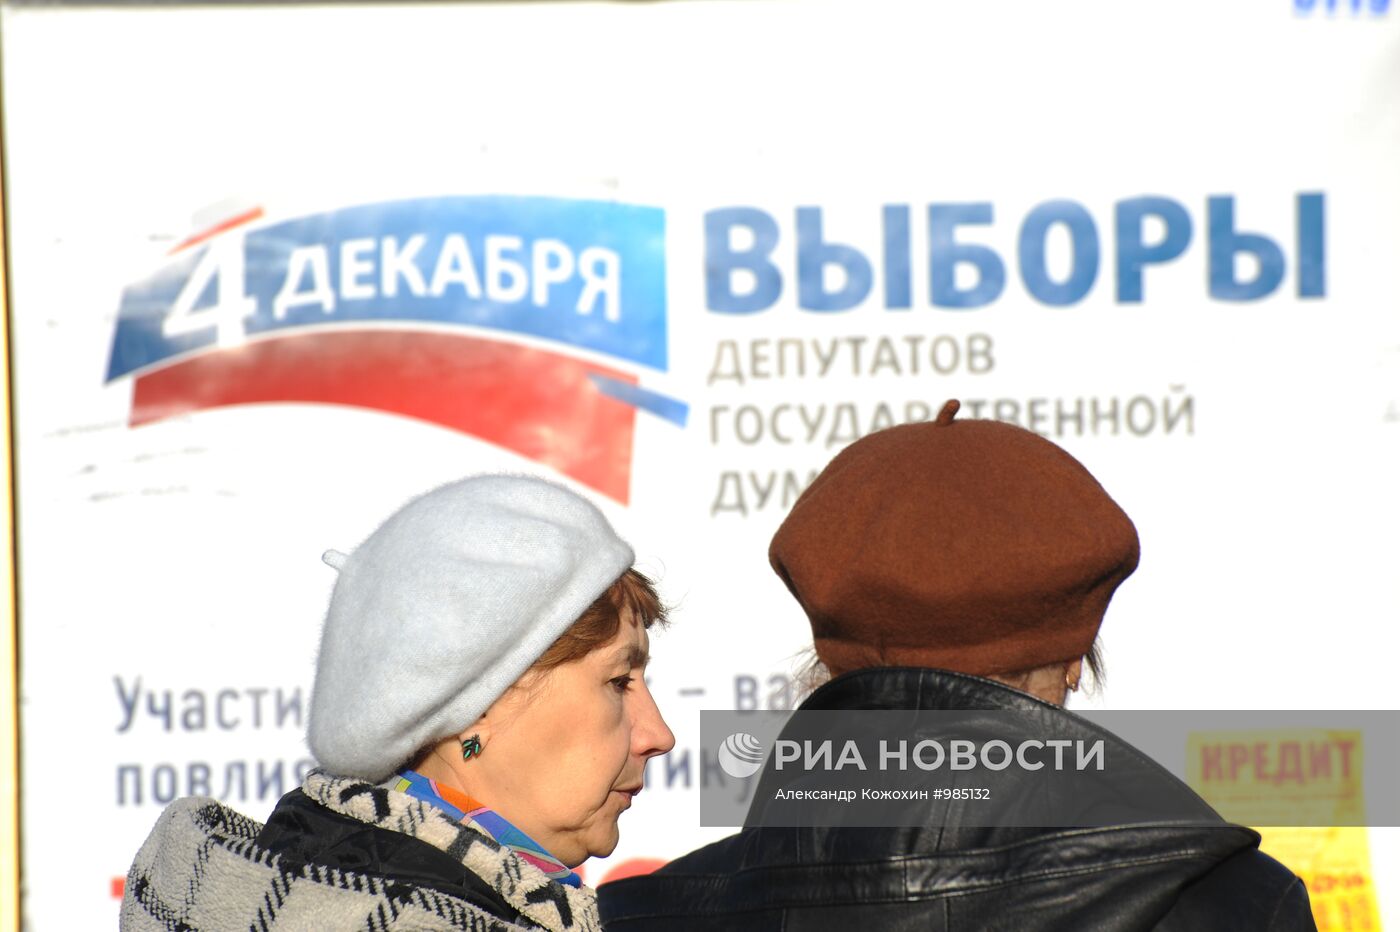 Агитационные плакаты думской предвыборной кампании в Москве